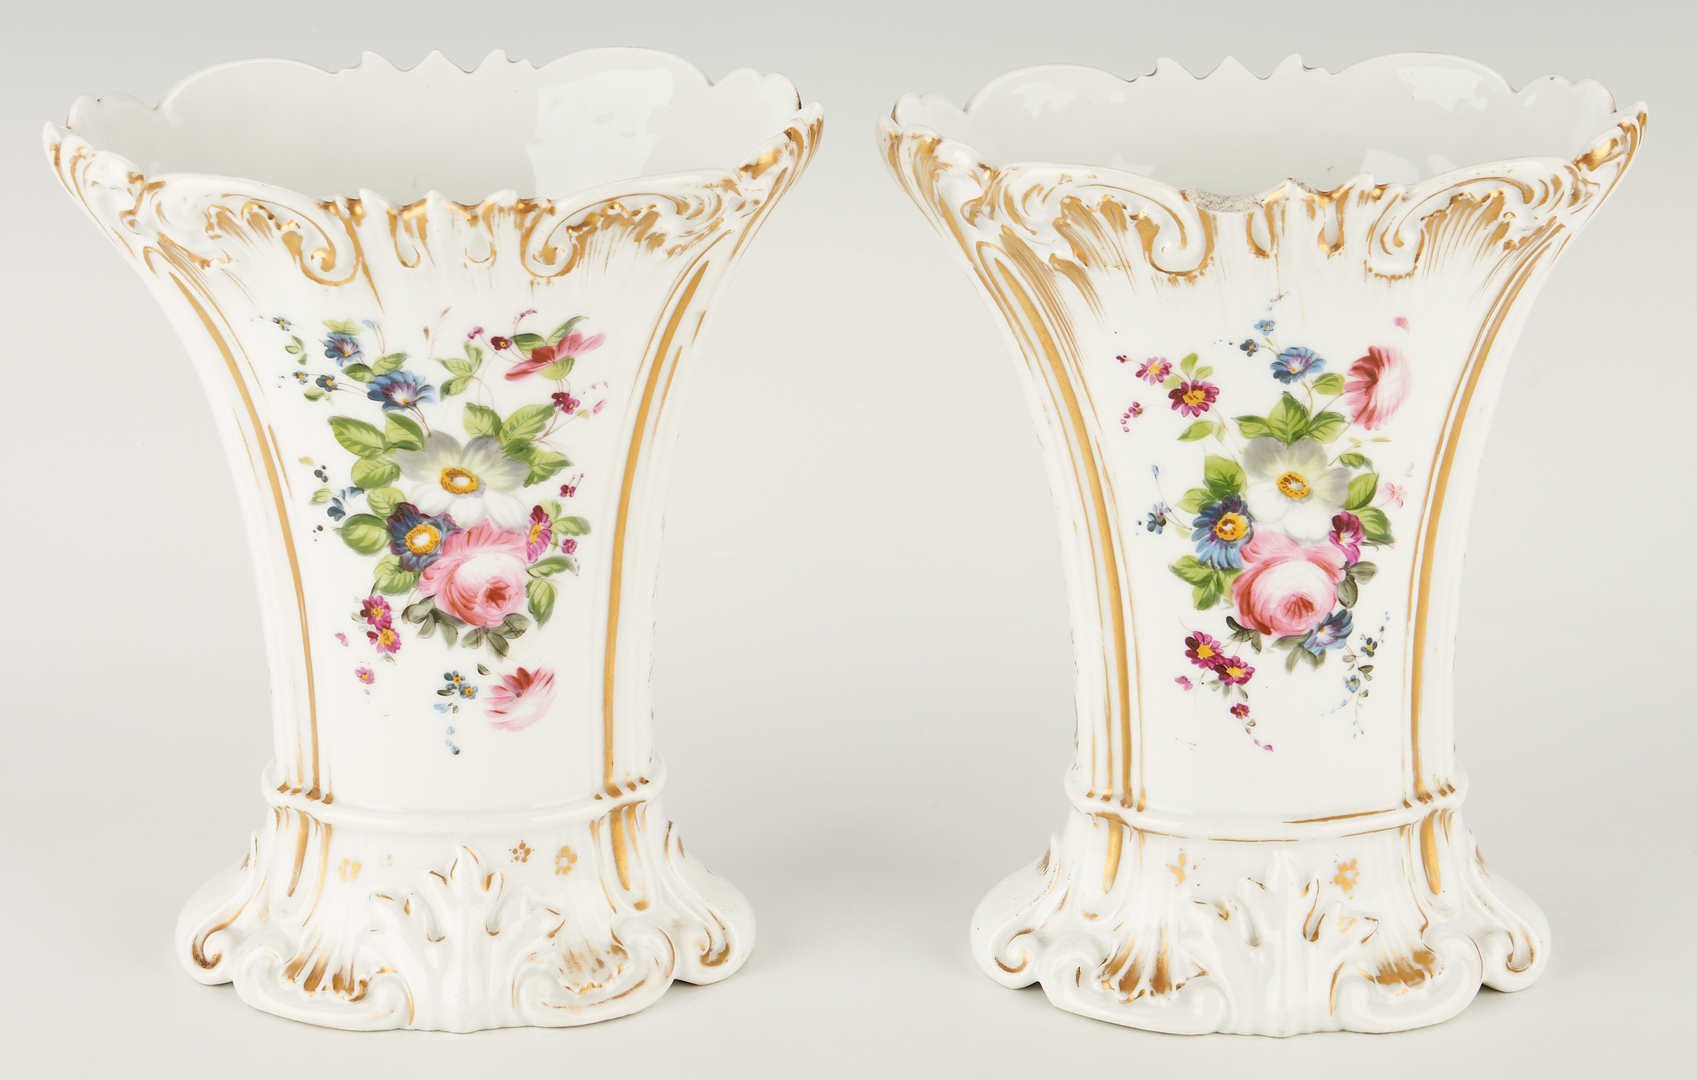 Lot 181: 5 Old Paris Porcelain Vases, incl. Pairs